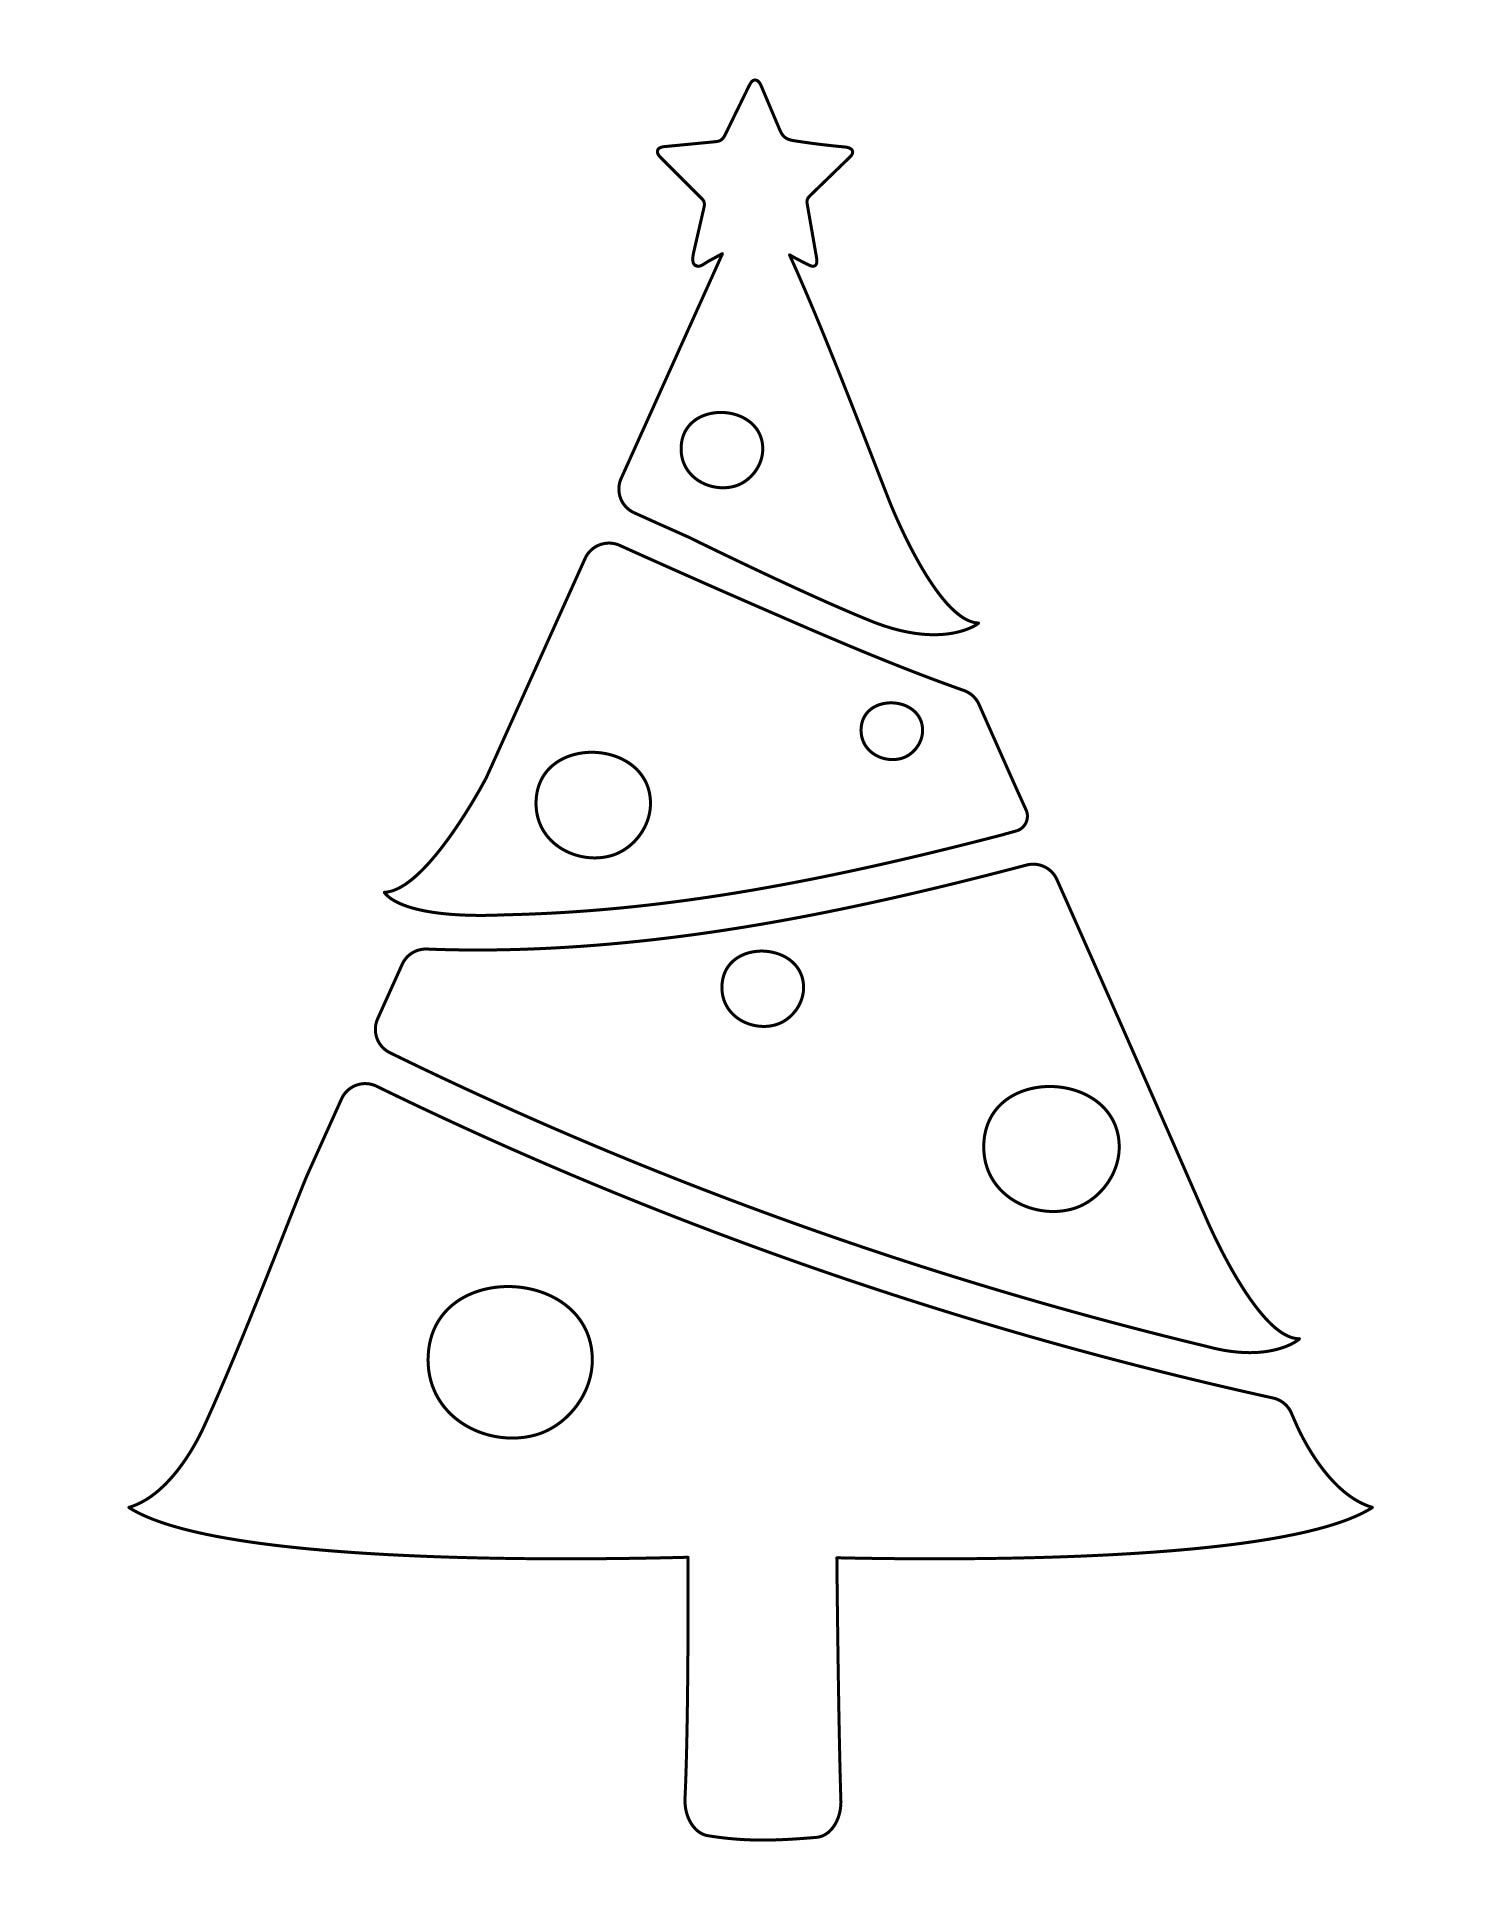 Printable Large Christmas Tree Template